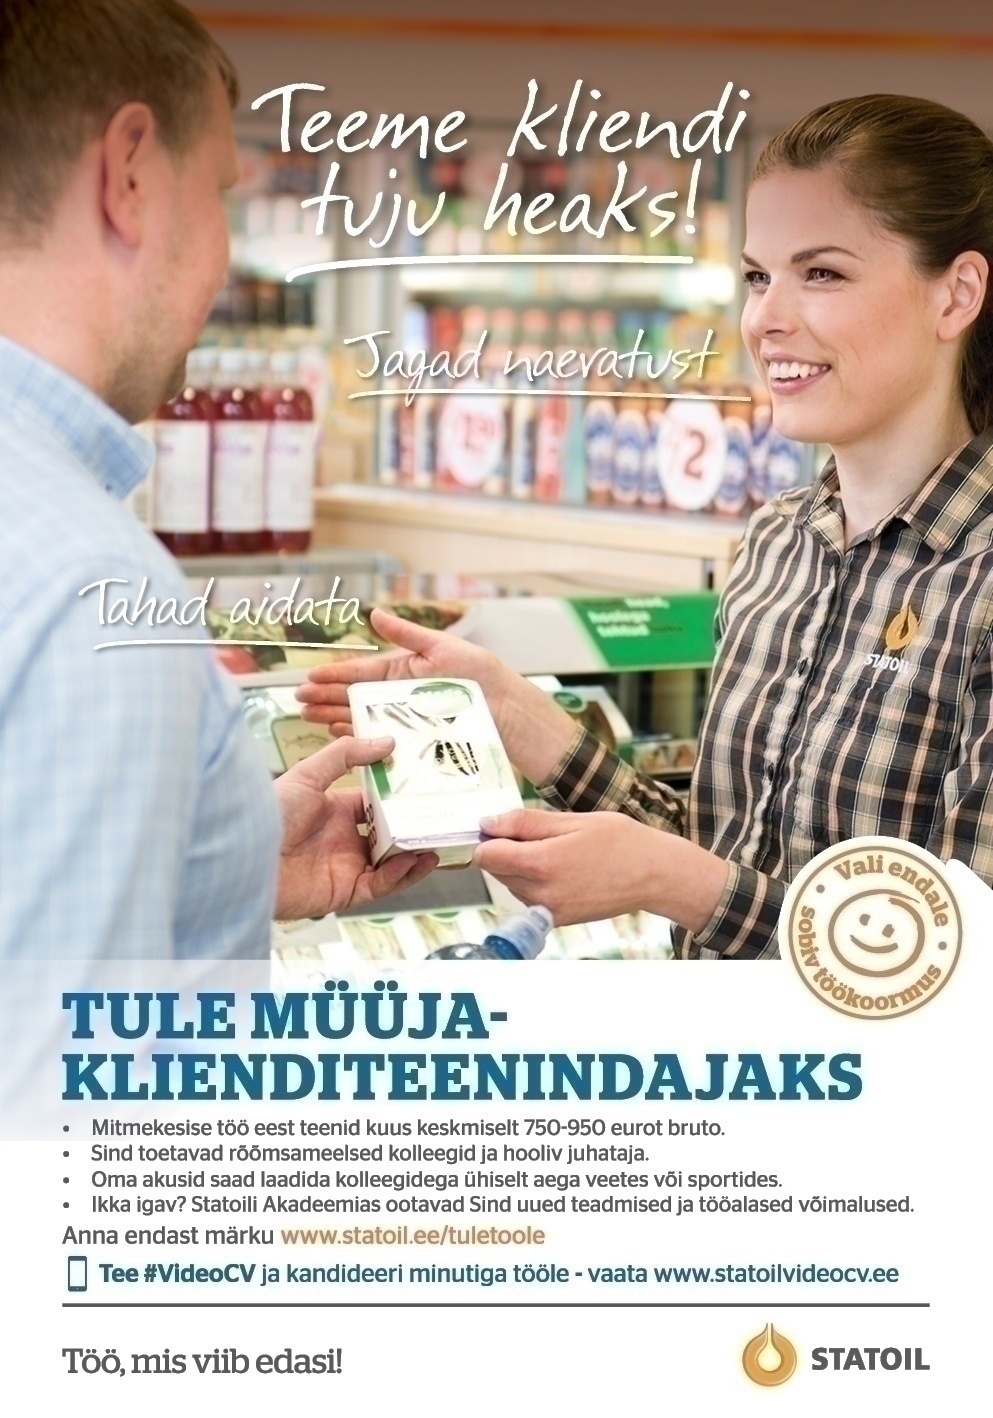 Circle K Eesti AS Müüja-klienditeenindaja Tallinna Laagri teenindusjaama